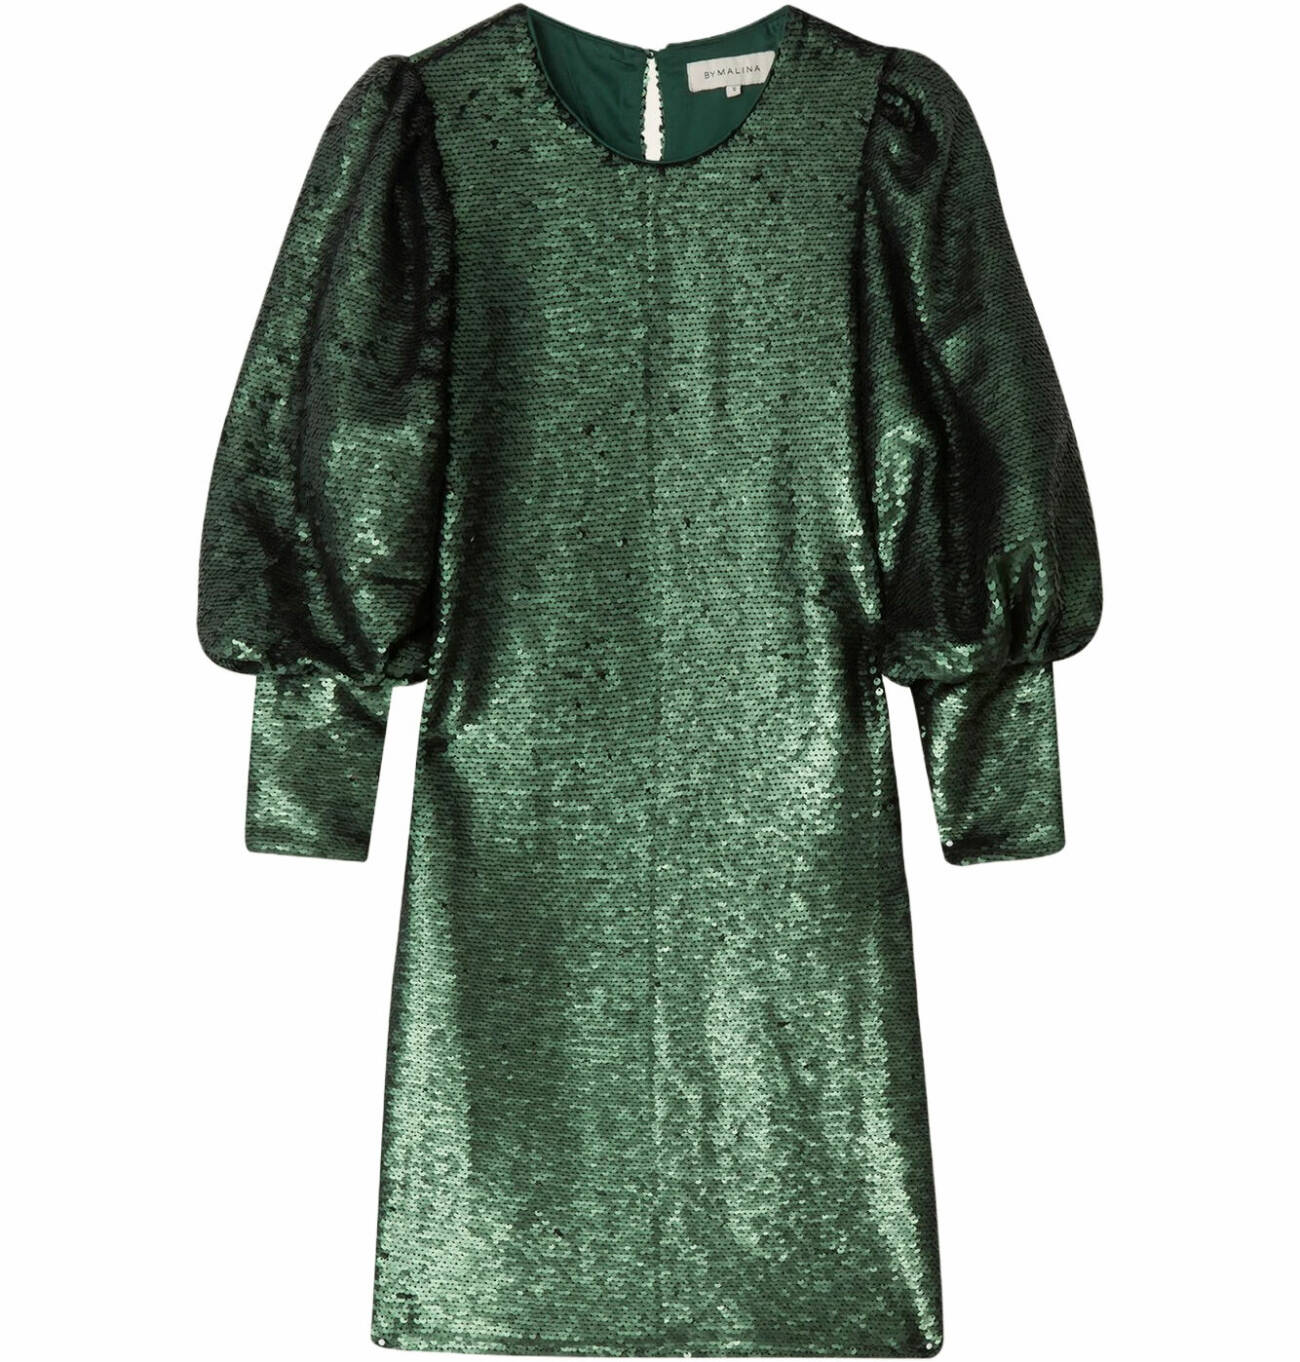 grön festklänning med puffärm med paljetter